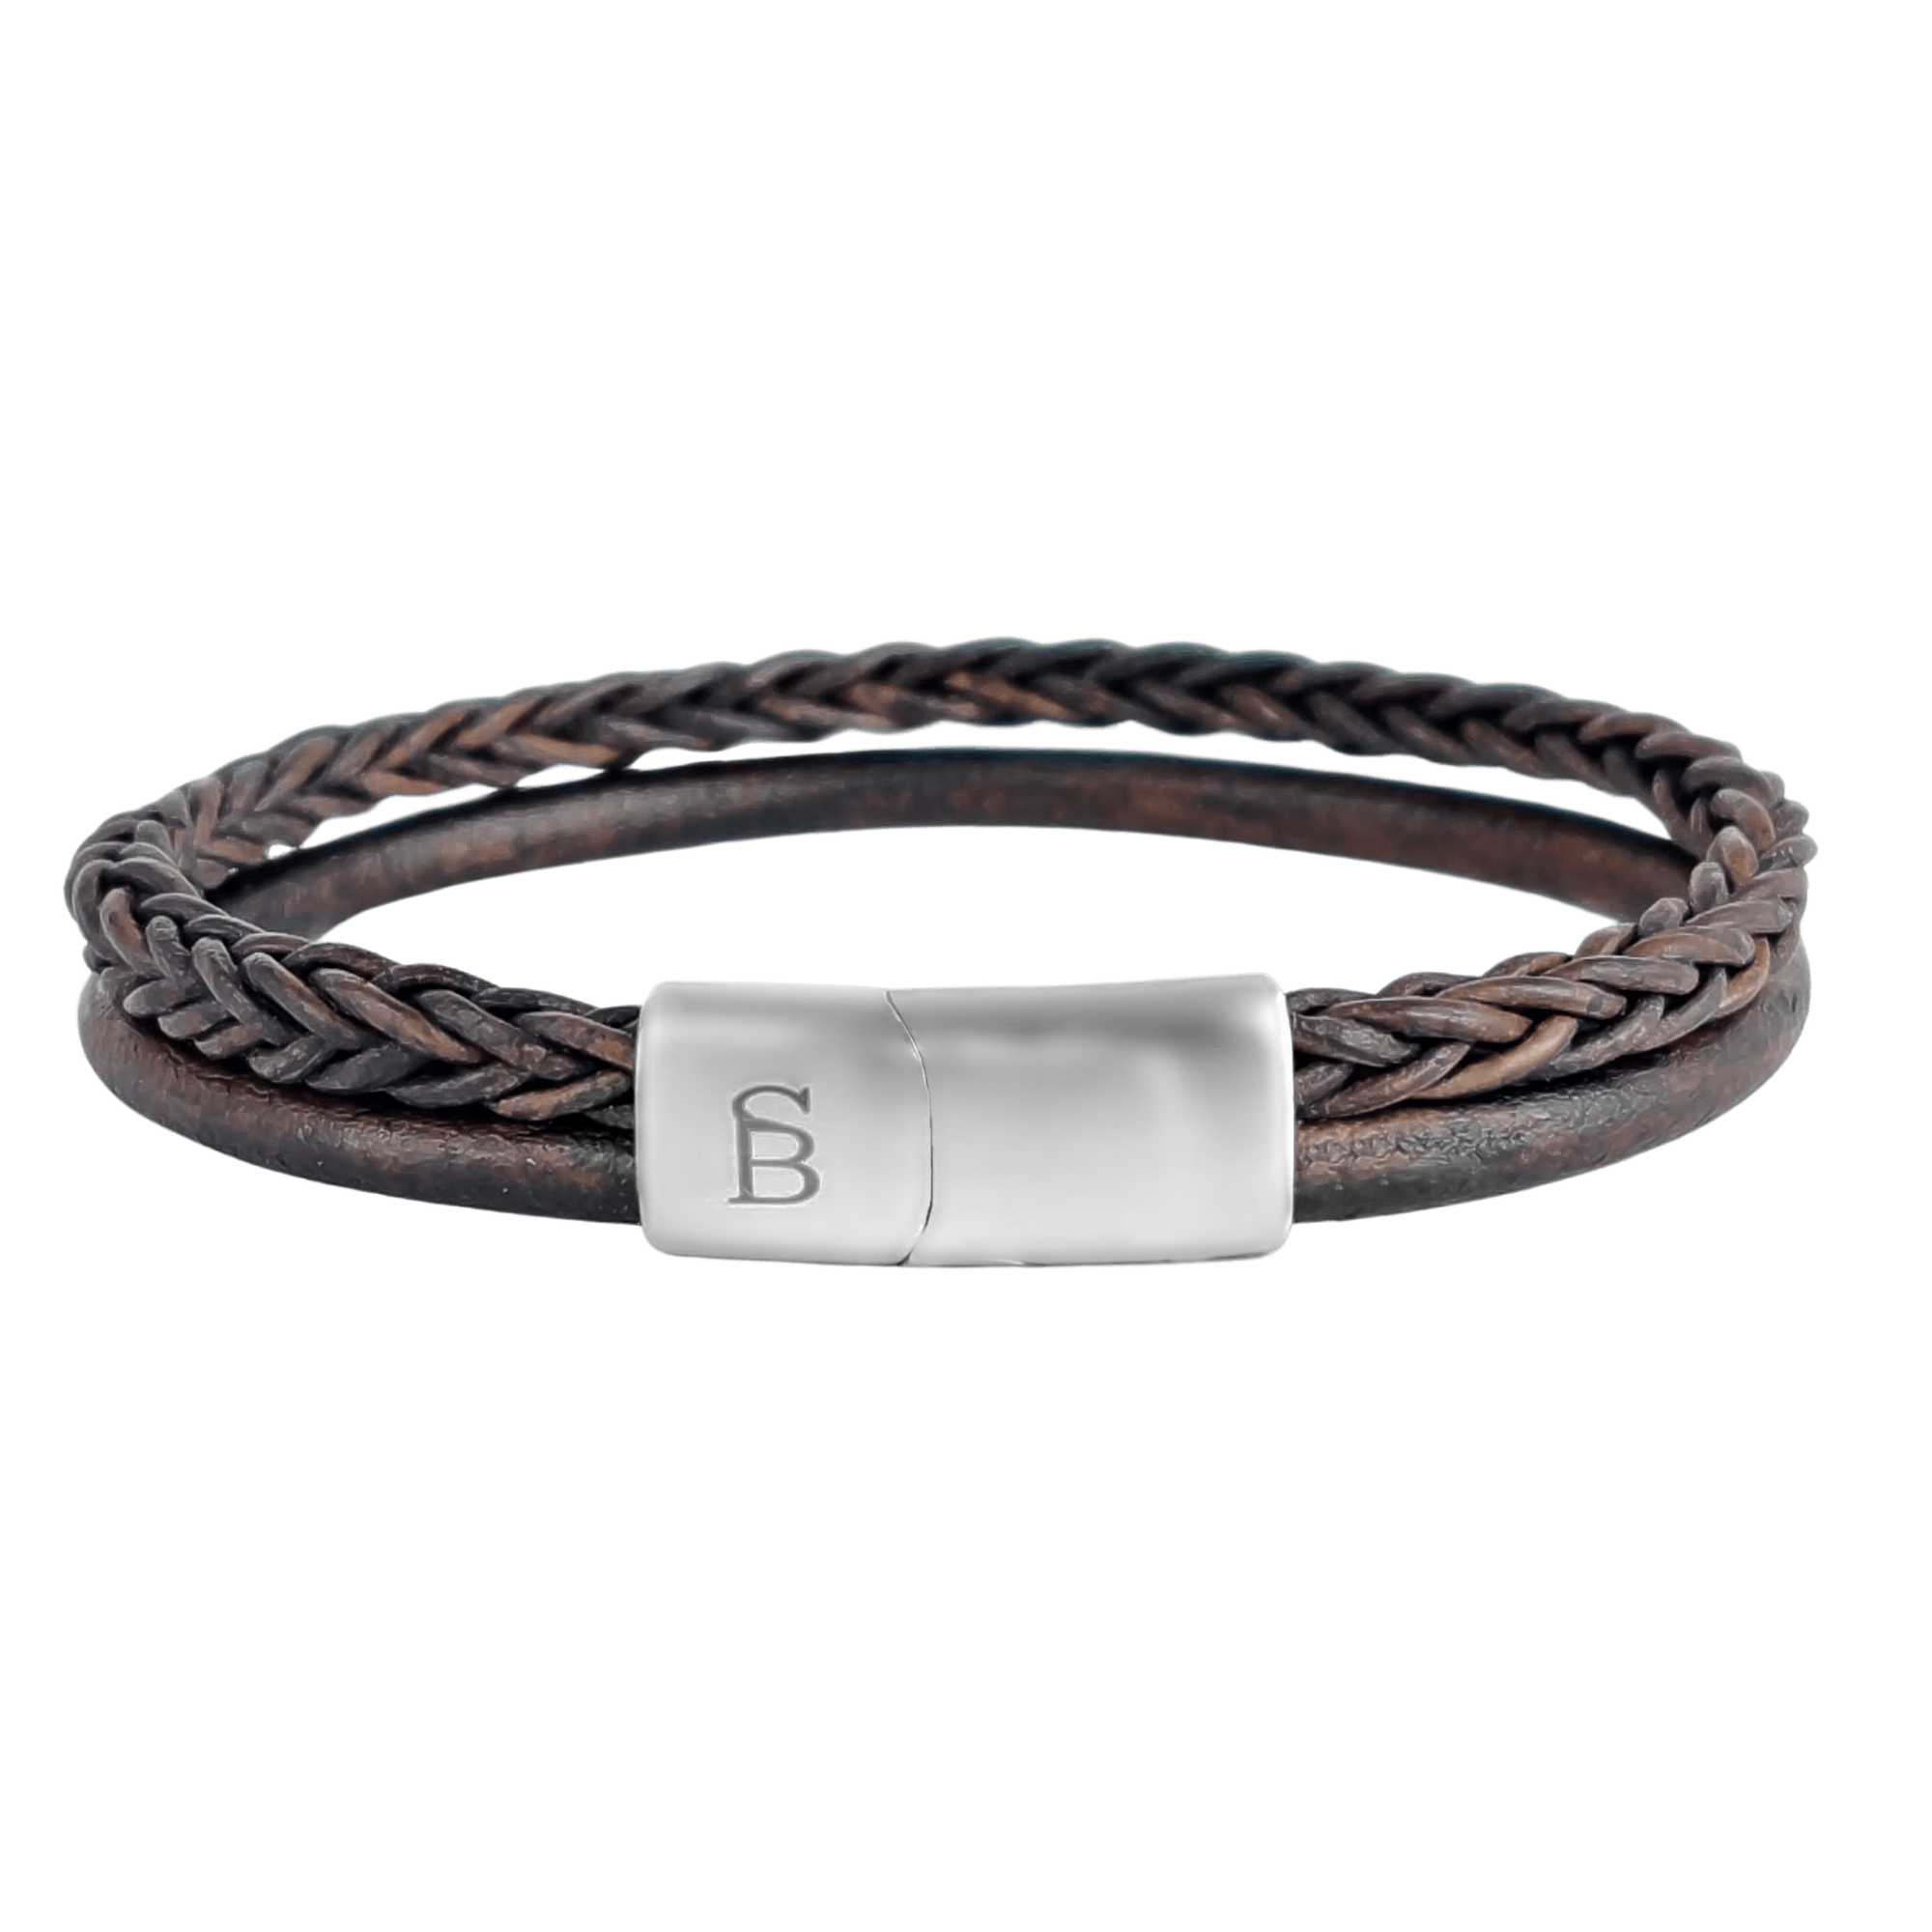 Denby armband LBD006 brown - Steel & Barnett